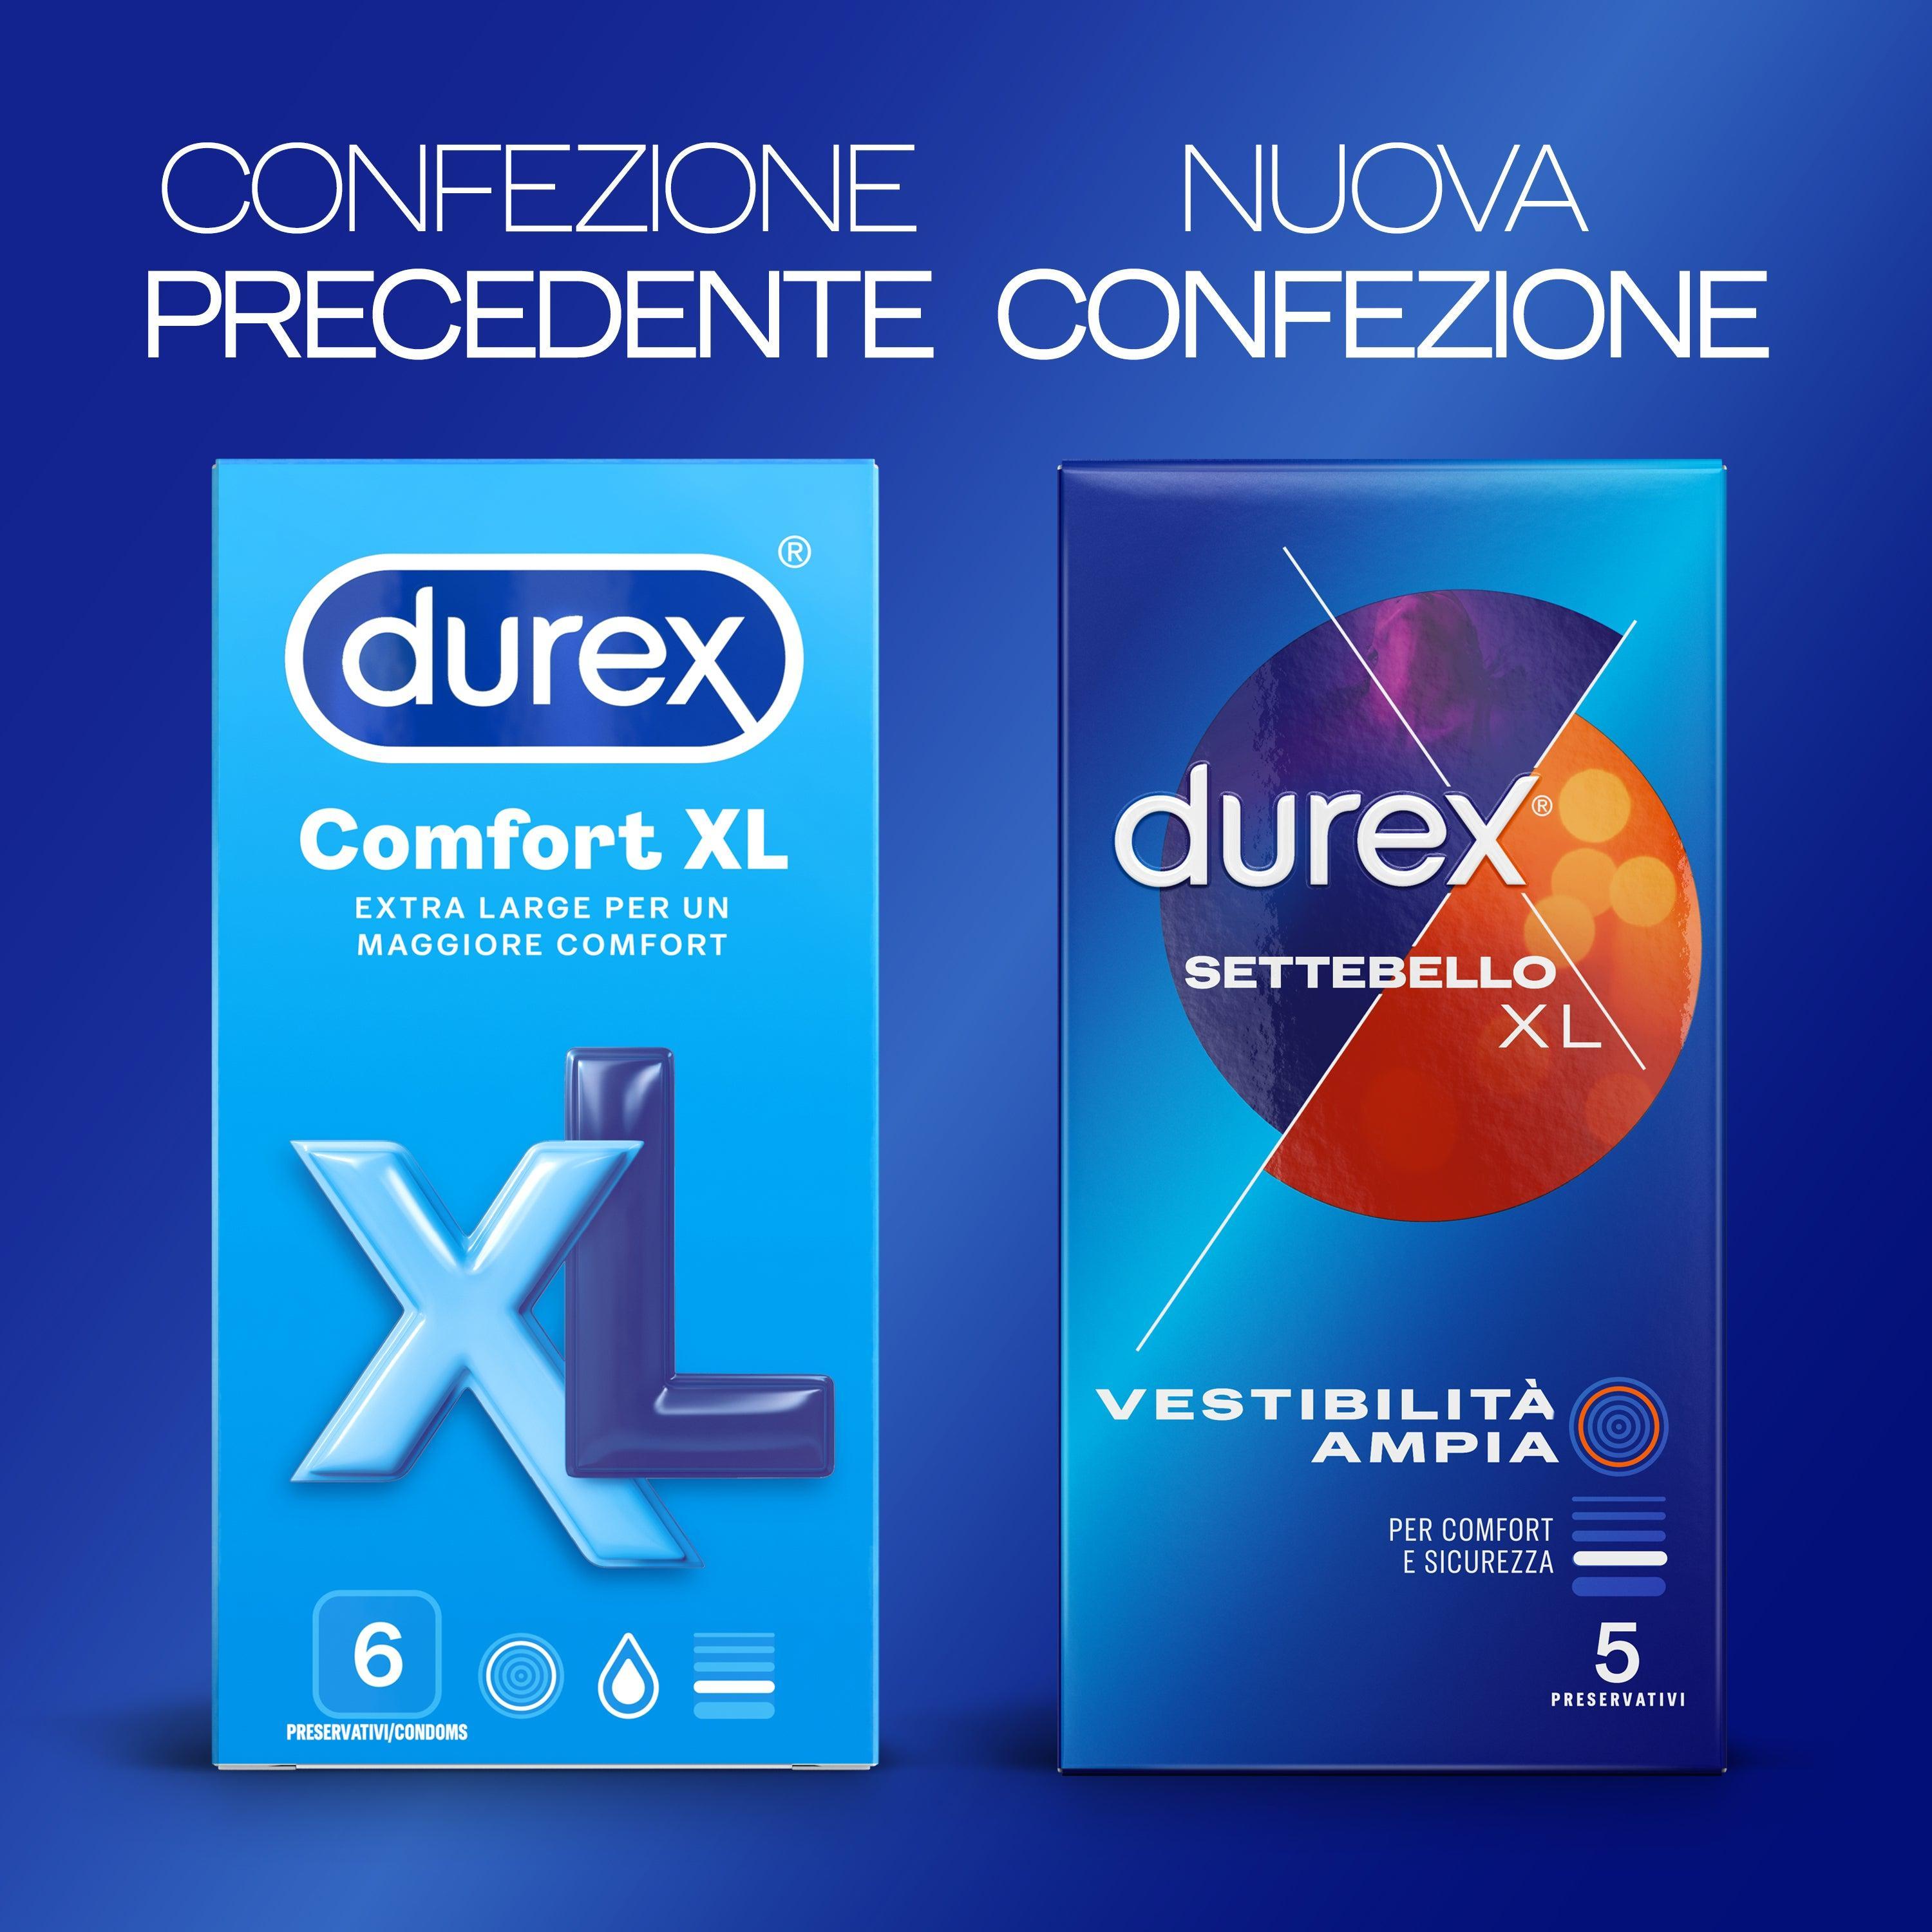 Preservativi Durex settebello XL confezione da 5